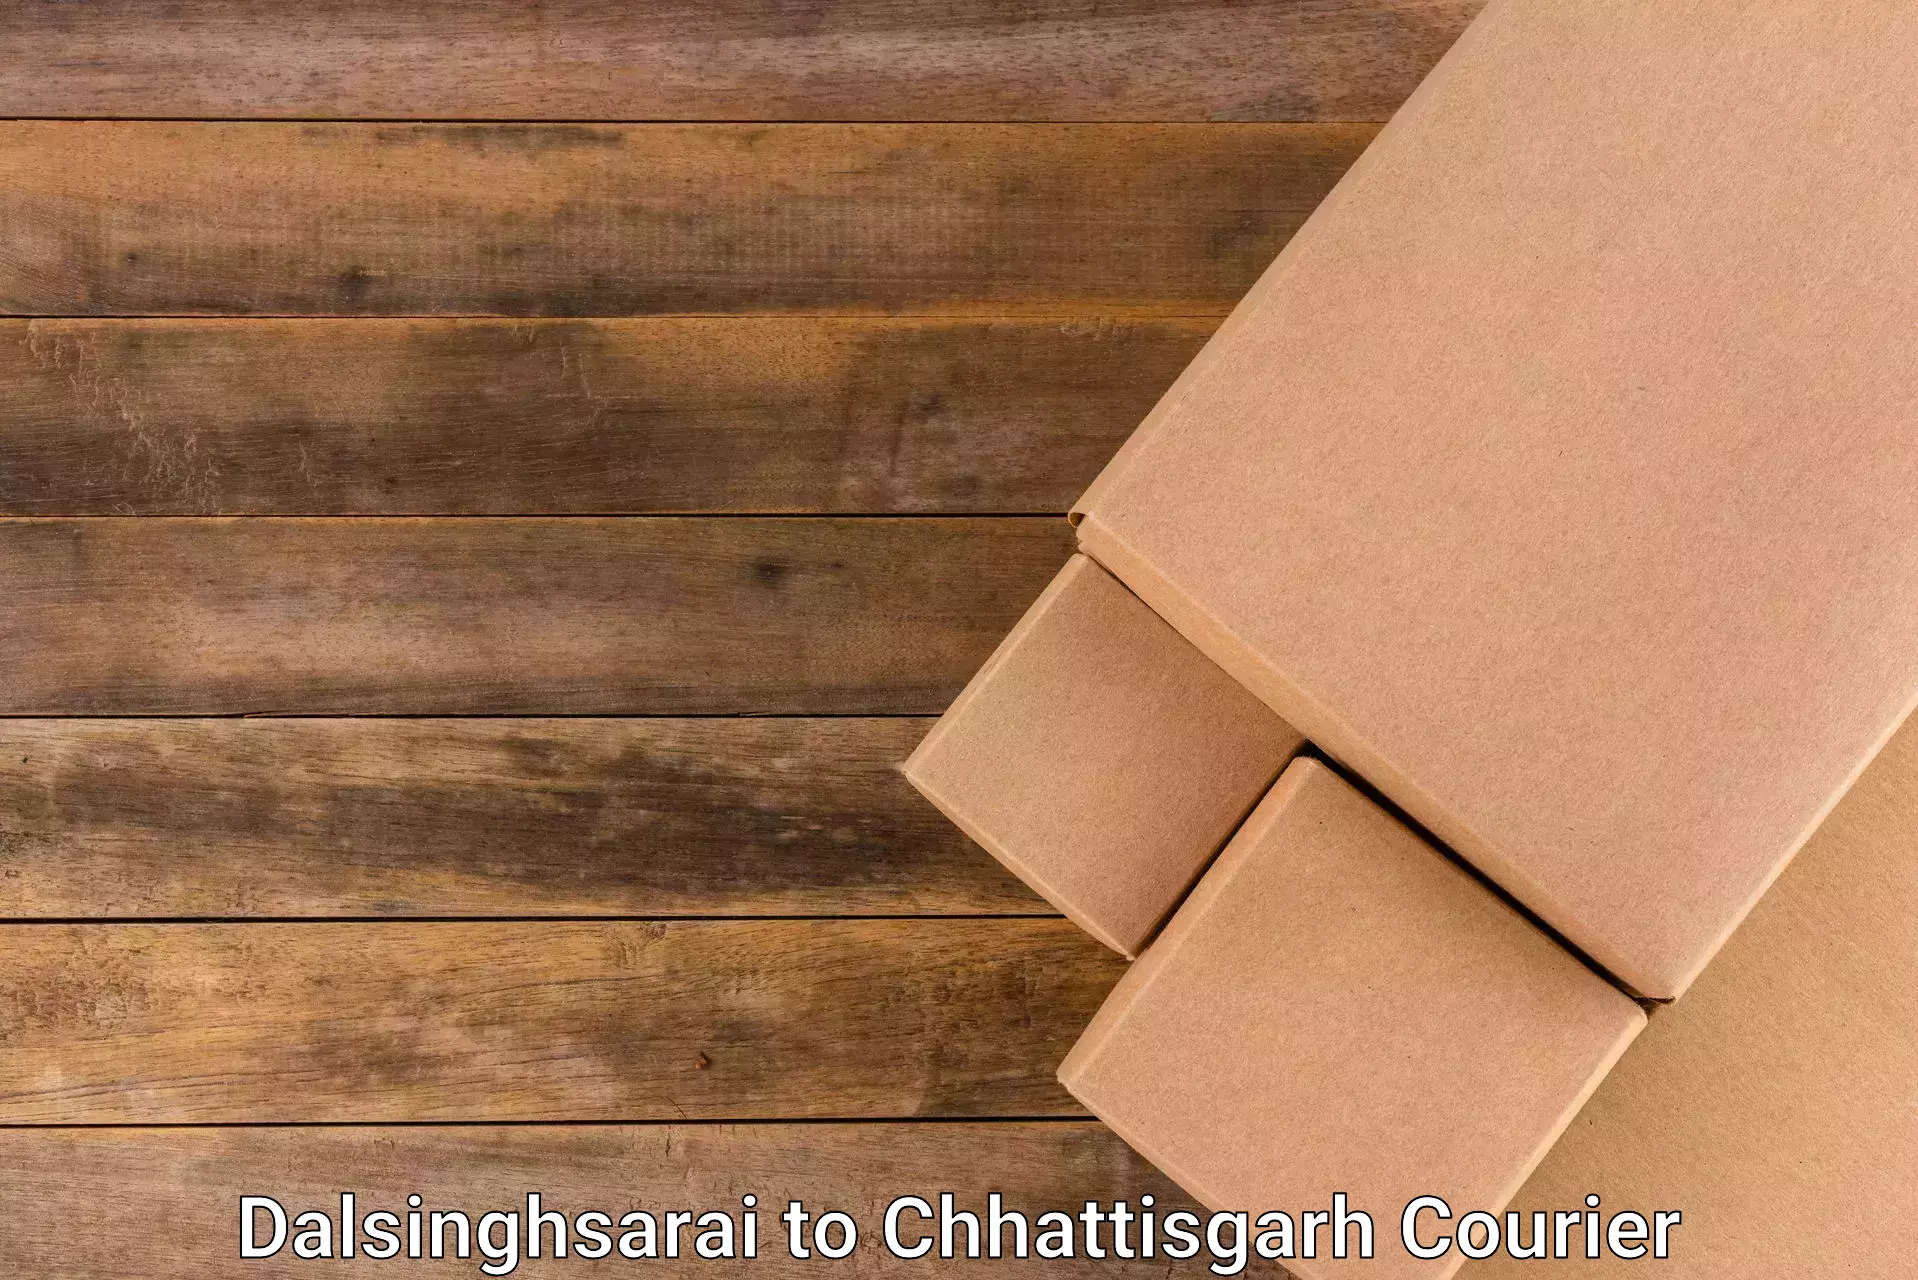 Optimized shipping services Dalsinghsarai to Chhattisgarh